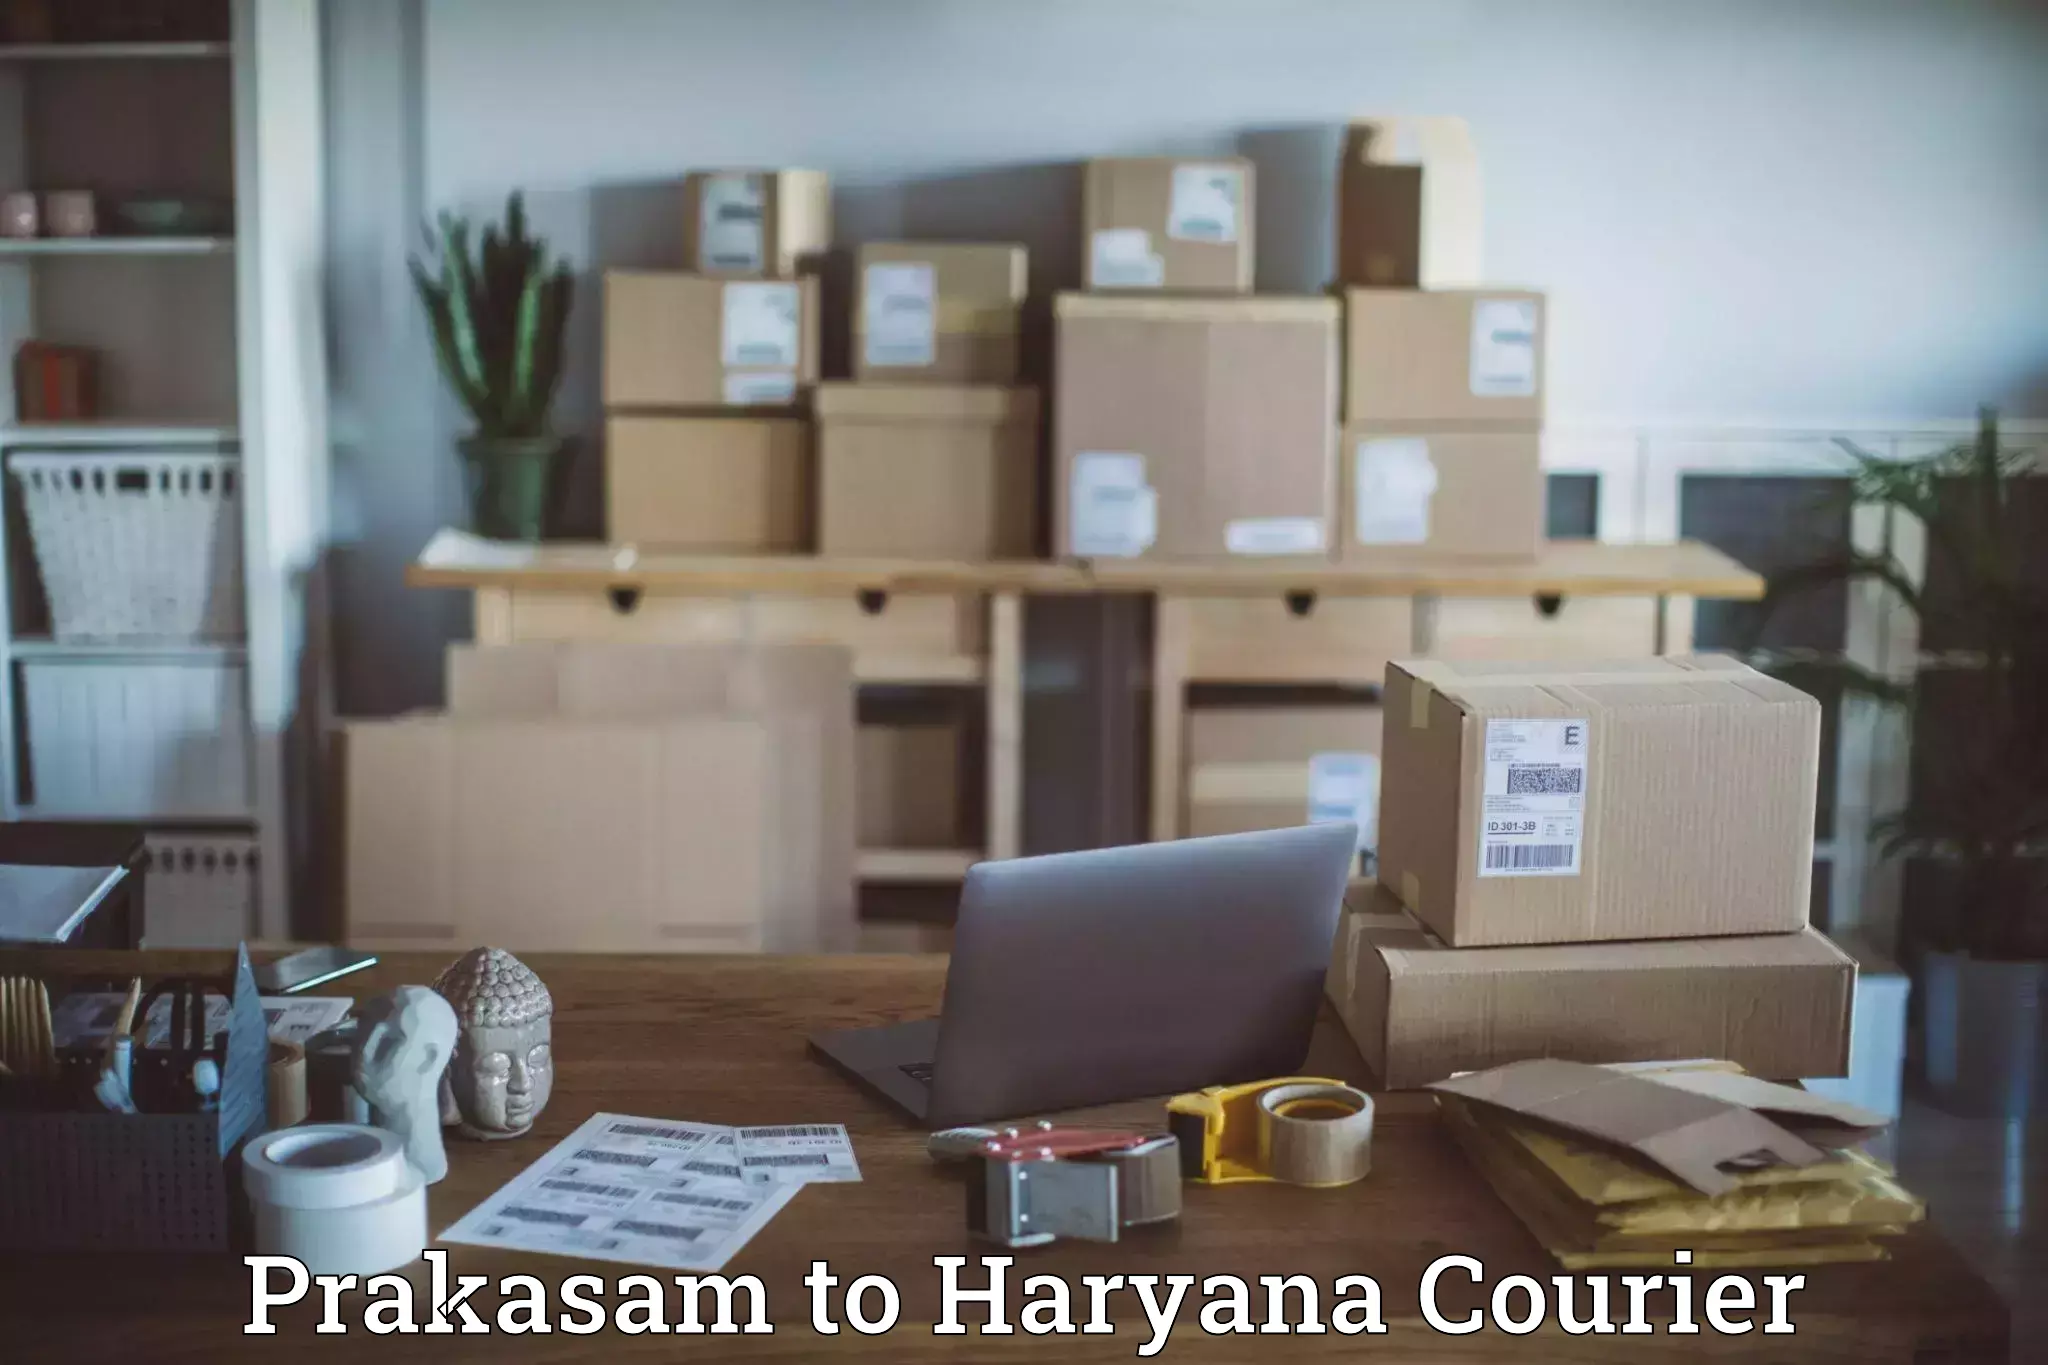 24-hour courier service Prakasam to Taraori